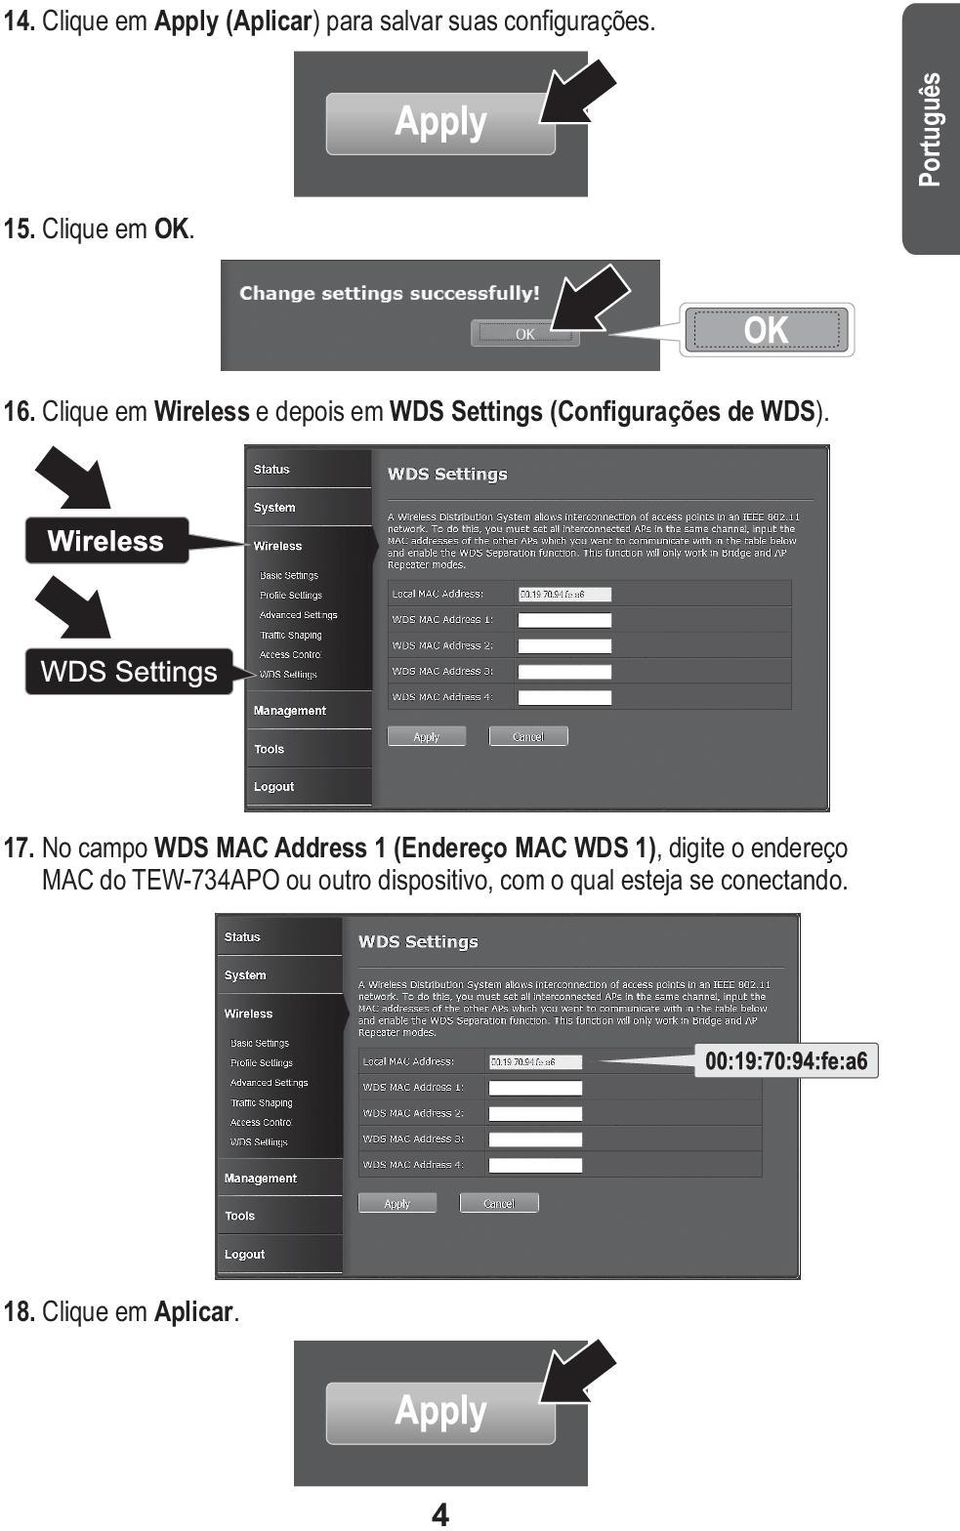 No campo WDS MAC Address 1 (Endereço MAC WDS 1), digite o endereço MAC do